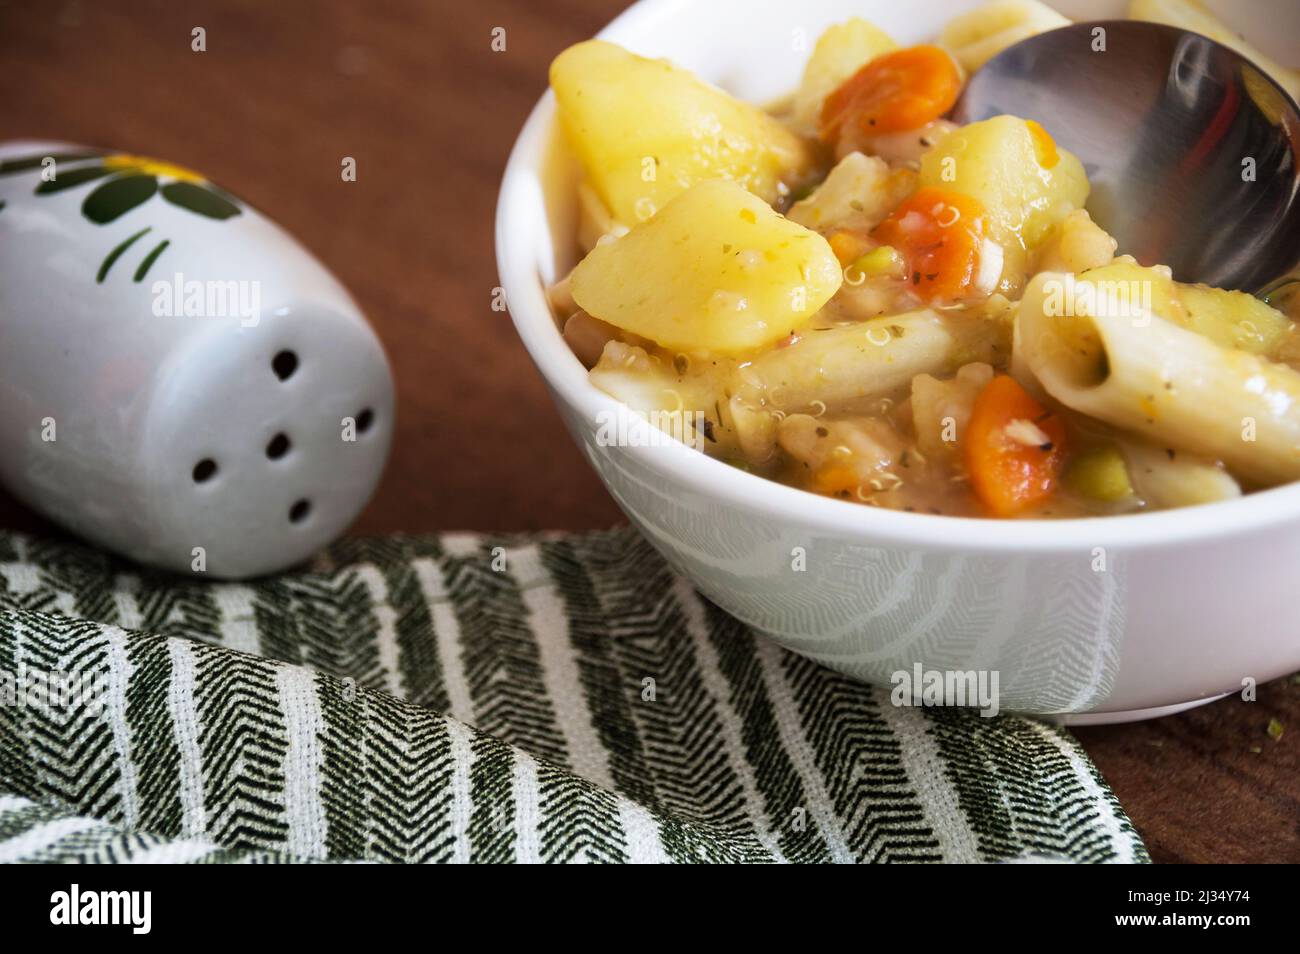 Ciotola di zuppa di verdure con patate, carote, quinoa, piselli e spaghetti, mostrando parte del cucchiaio all'interno della ciotola che si trova su un tavolo marrone con striscia verde Foto Stock